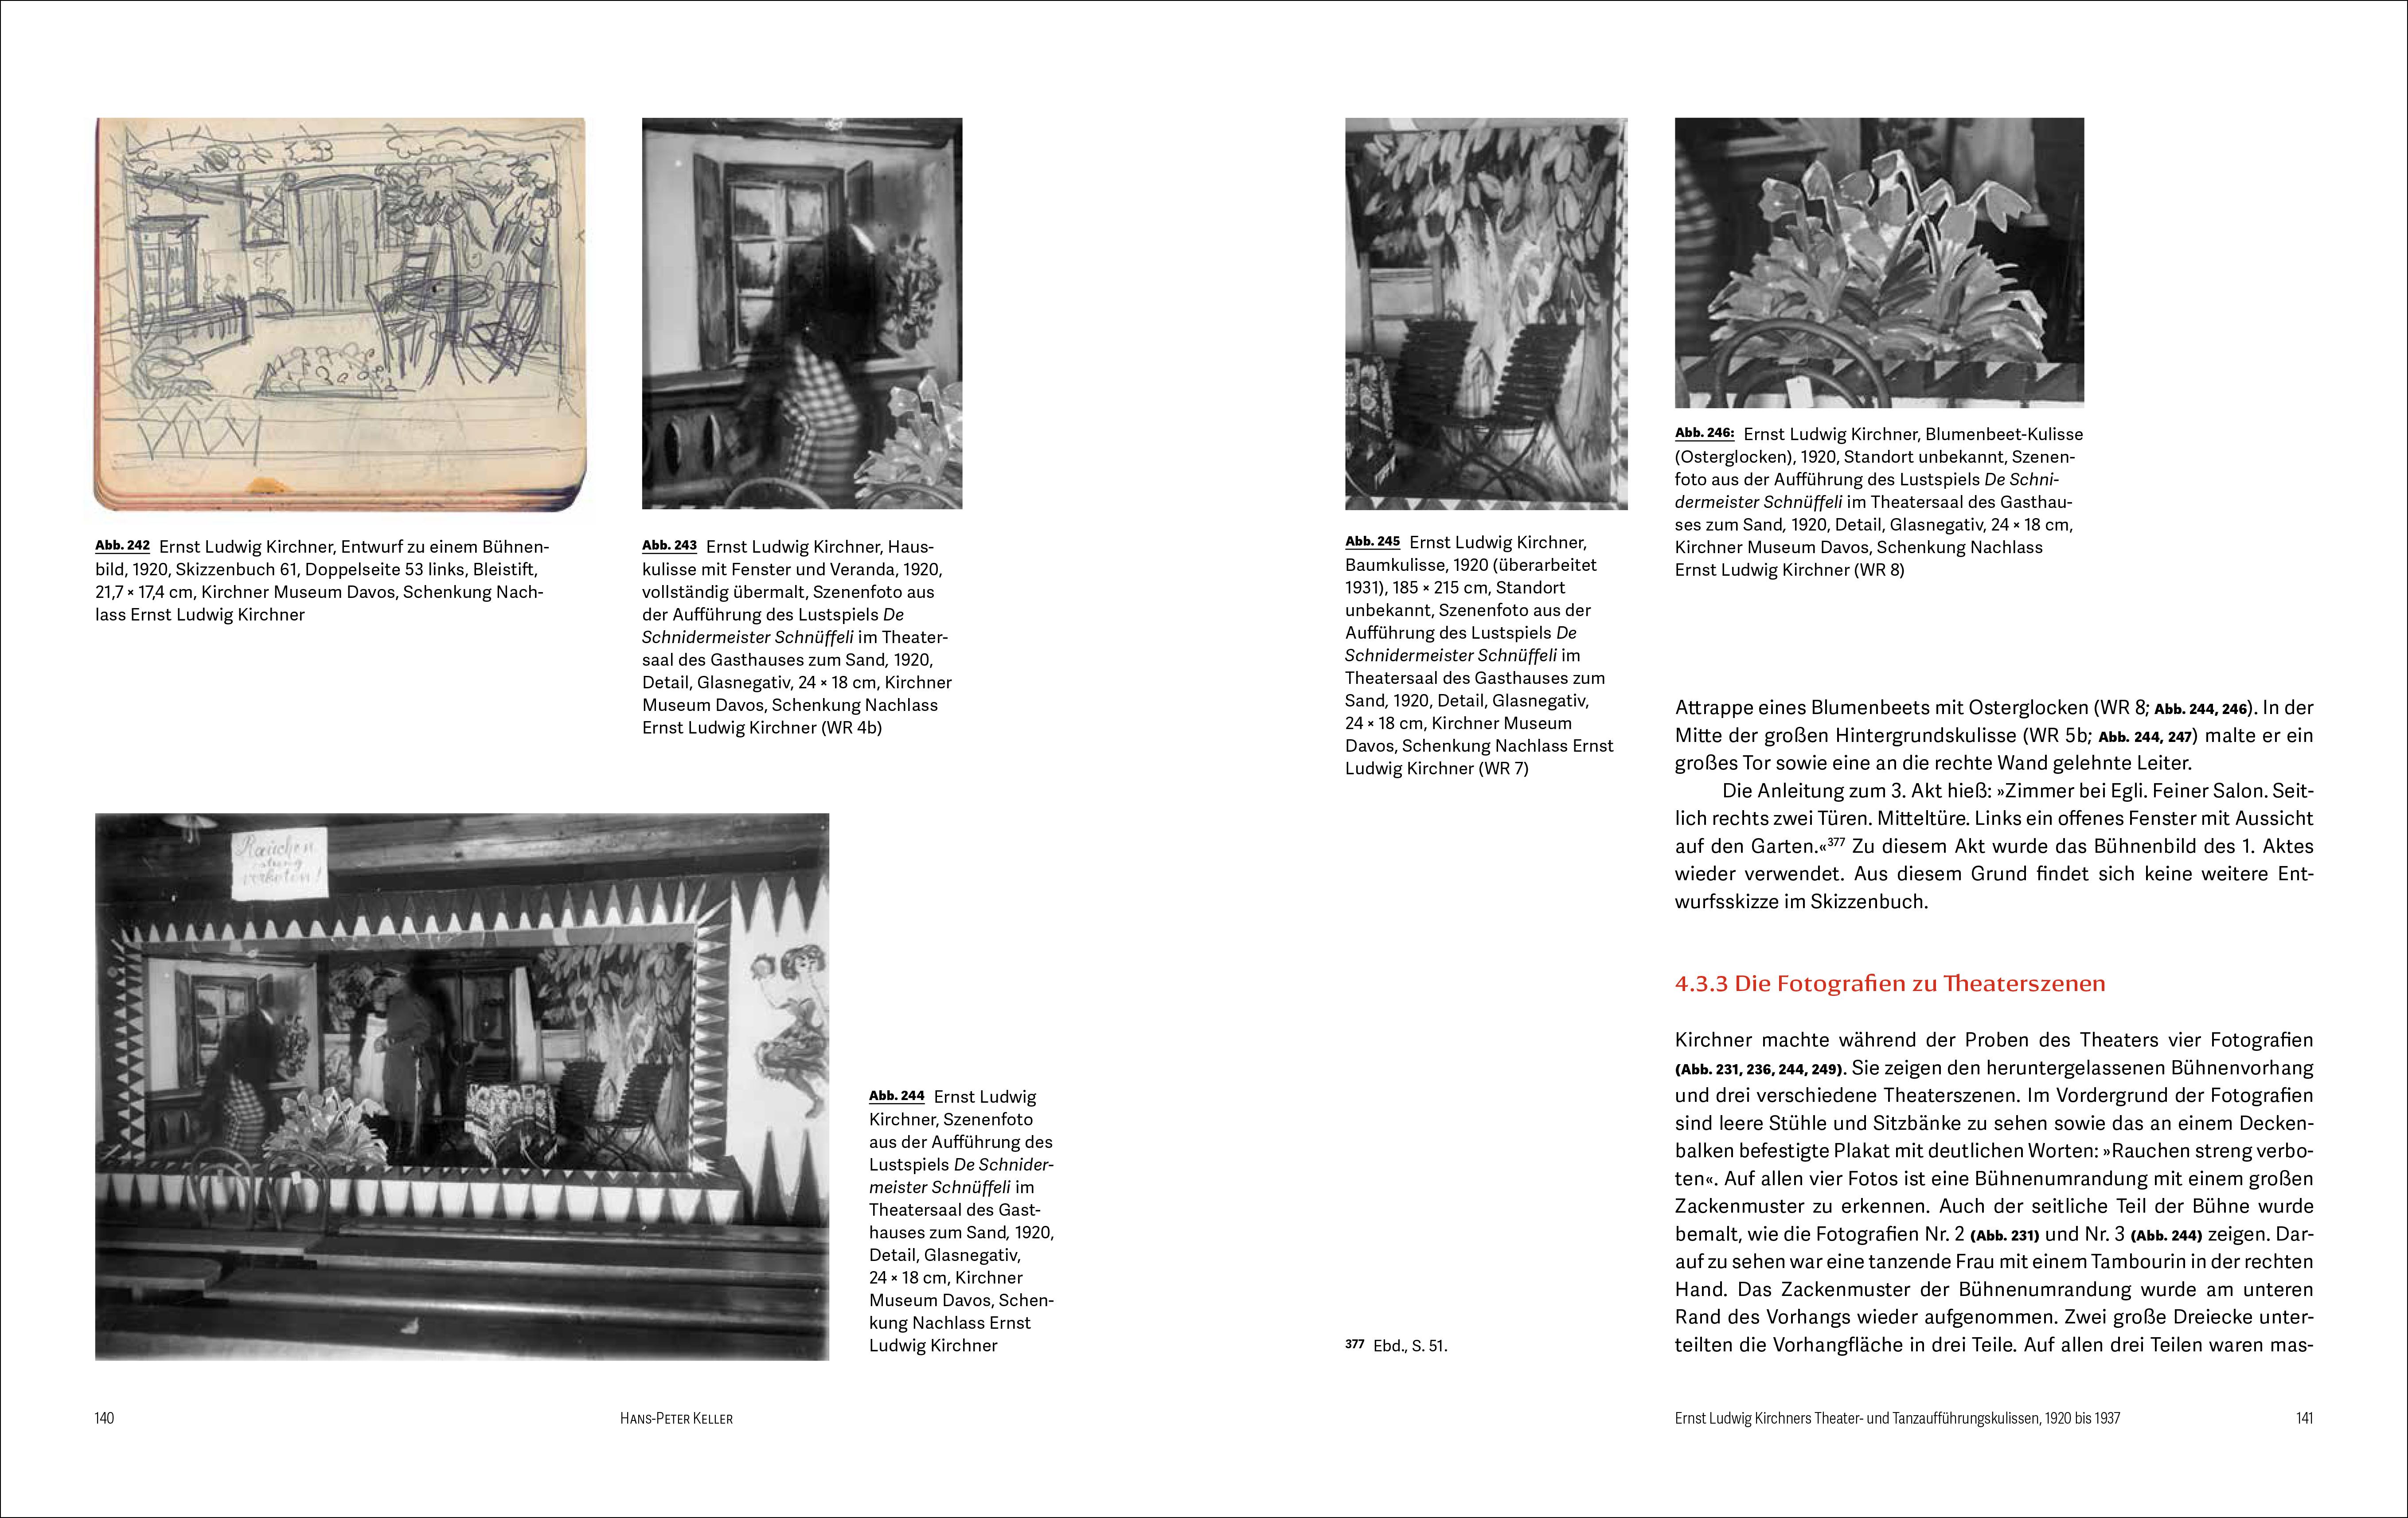 Ernst Ludwig Kirchner | Gestaltete Wände und Räume